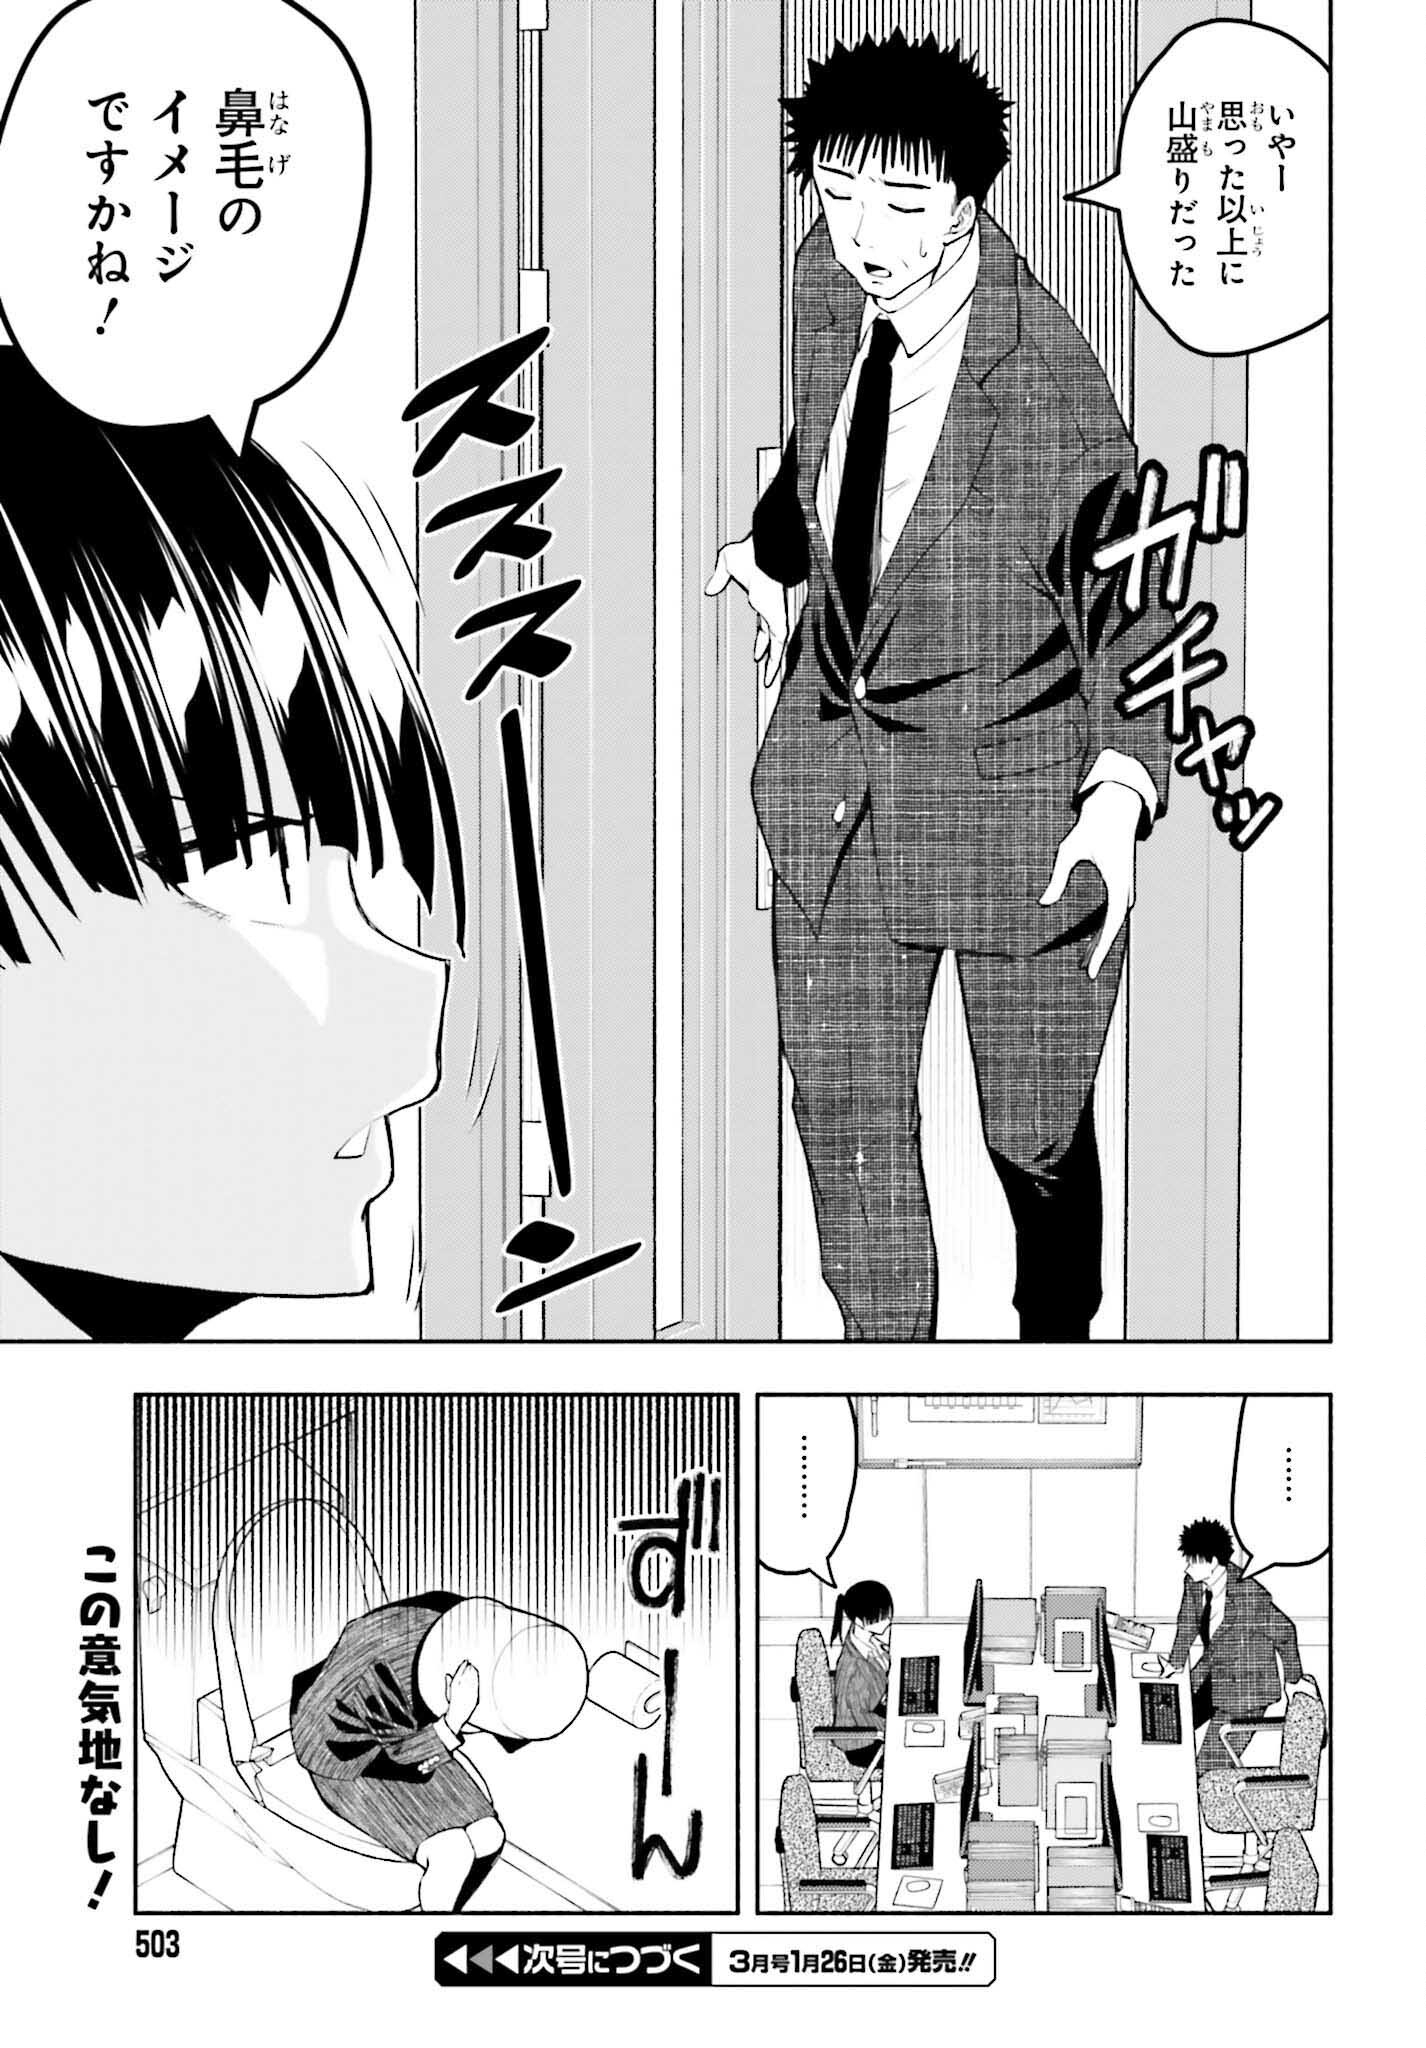 Omiai ni Sugoi Komyushou ga Kita - Chapter 11 - Page 9